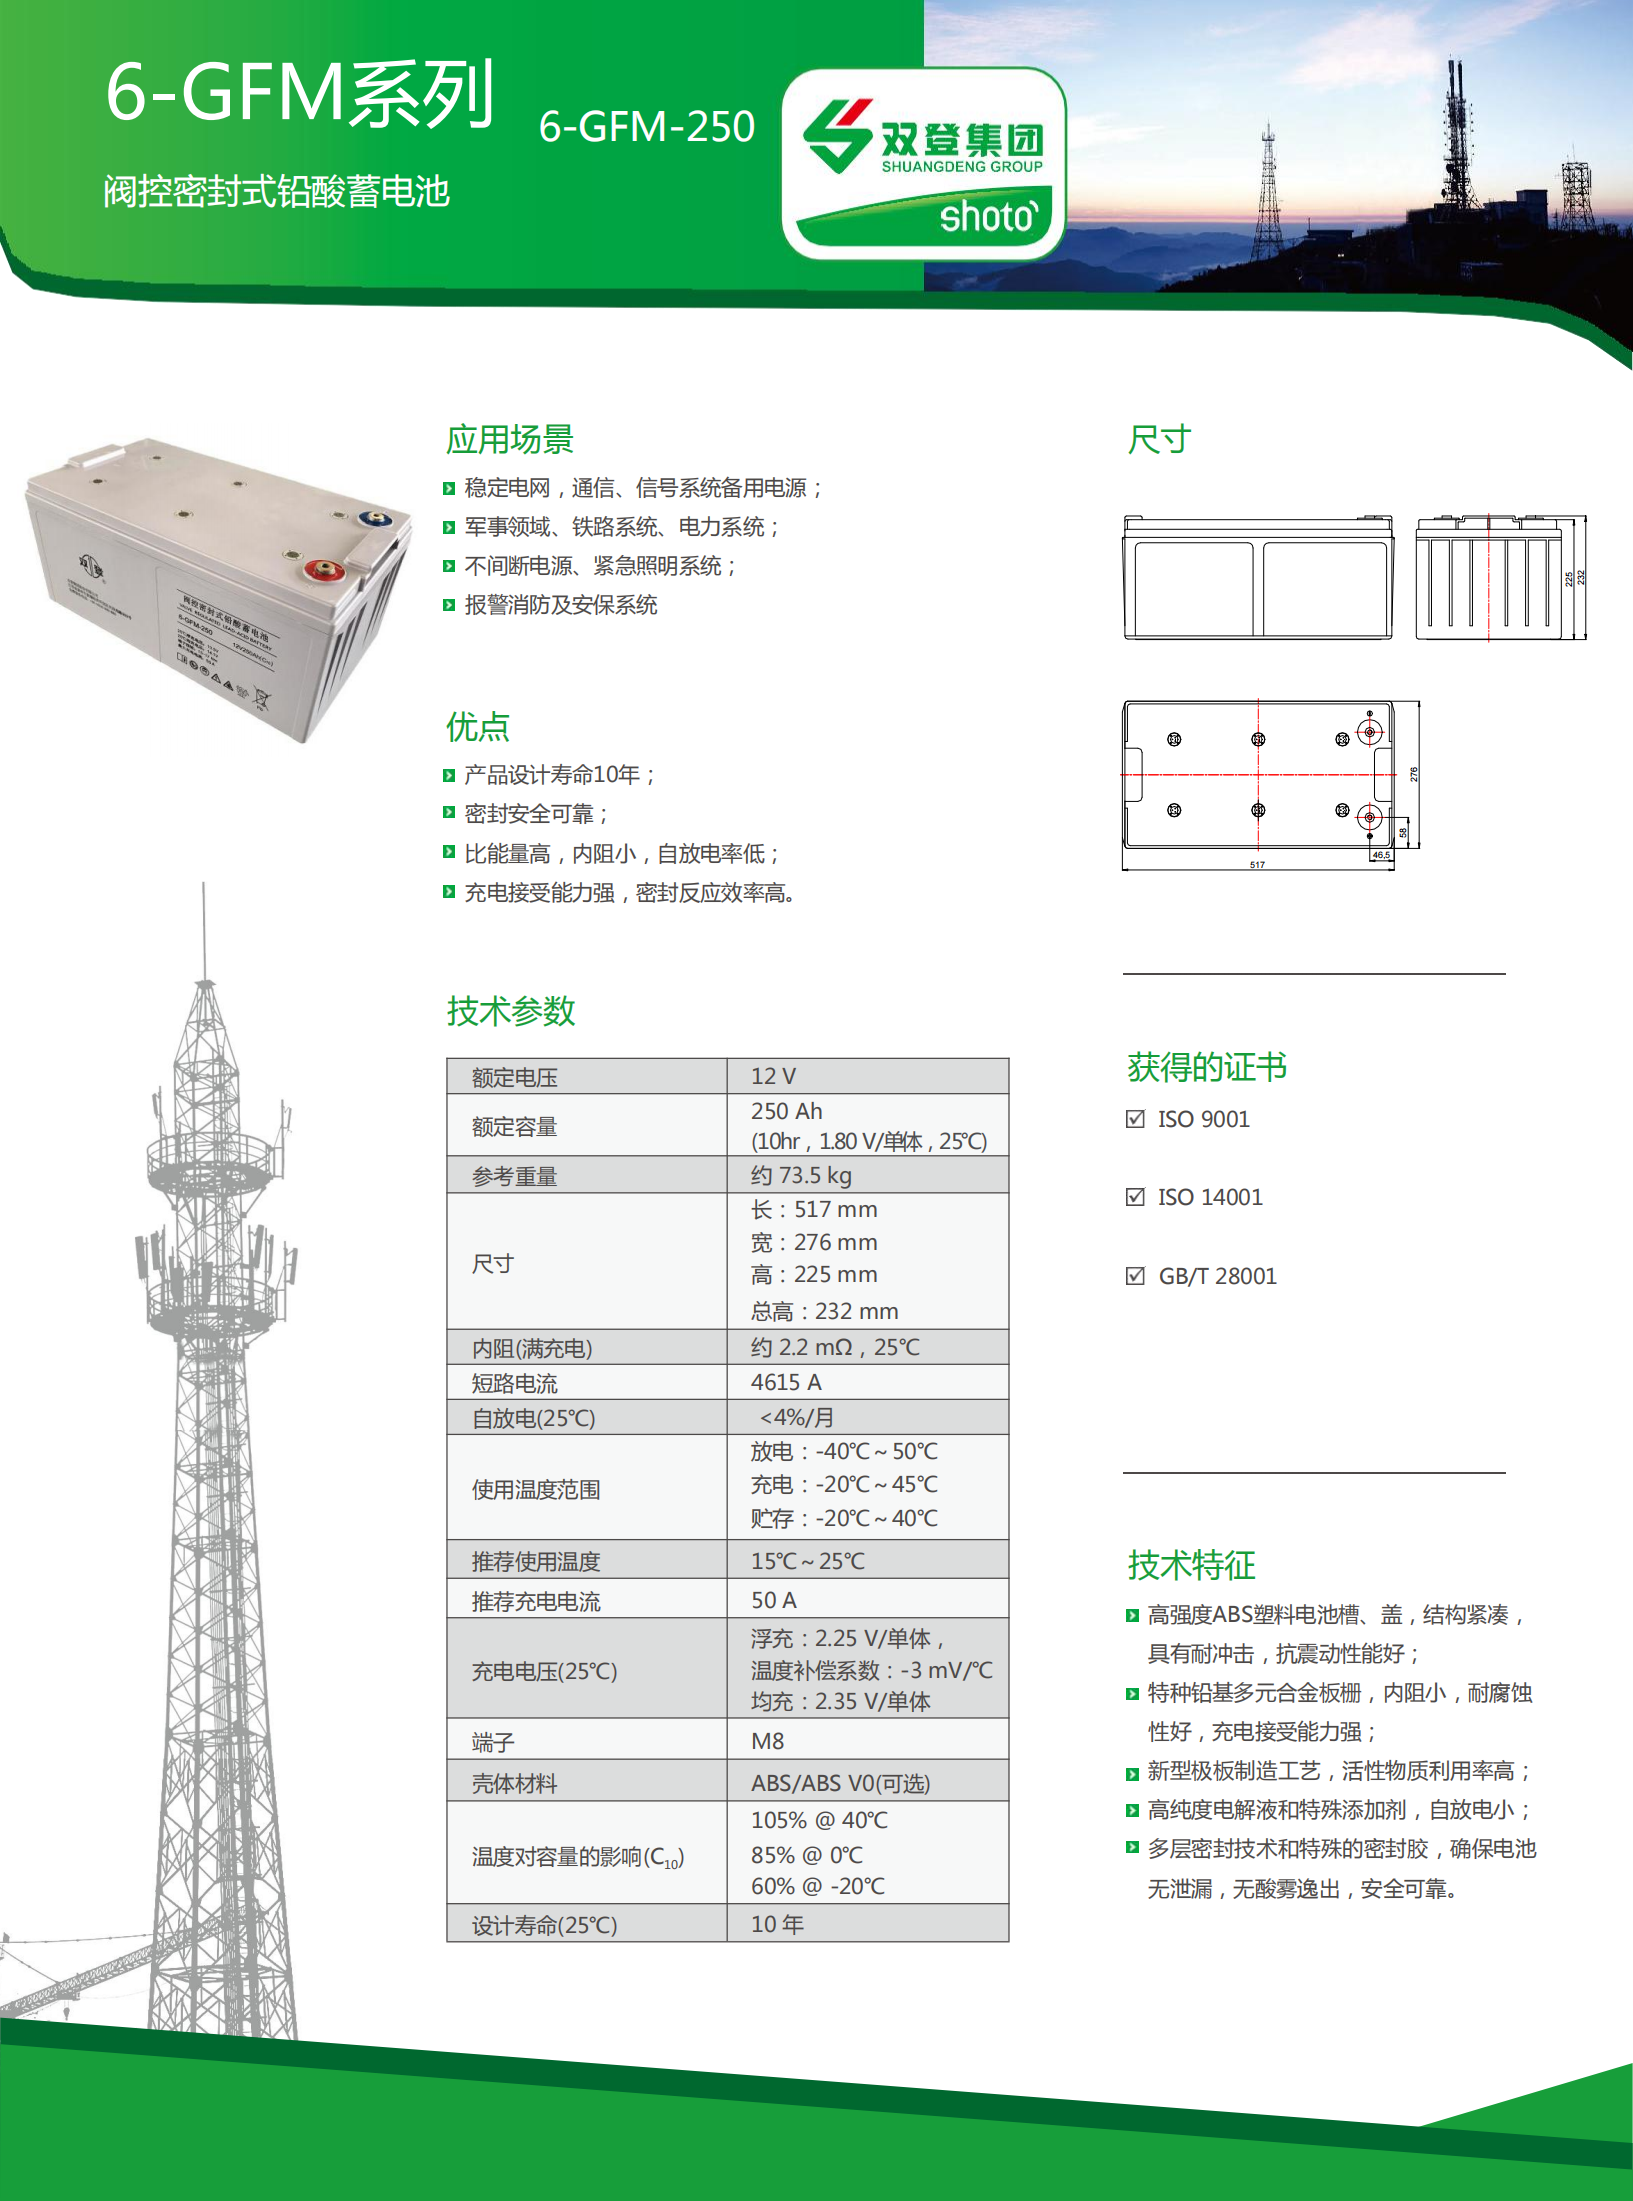 6-GFM-250(中文版)_00.png